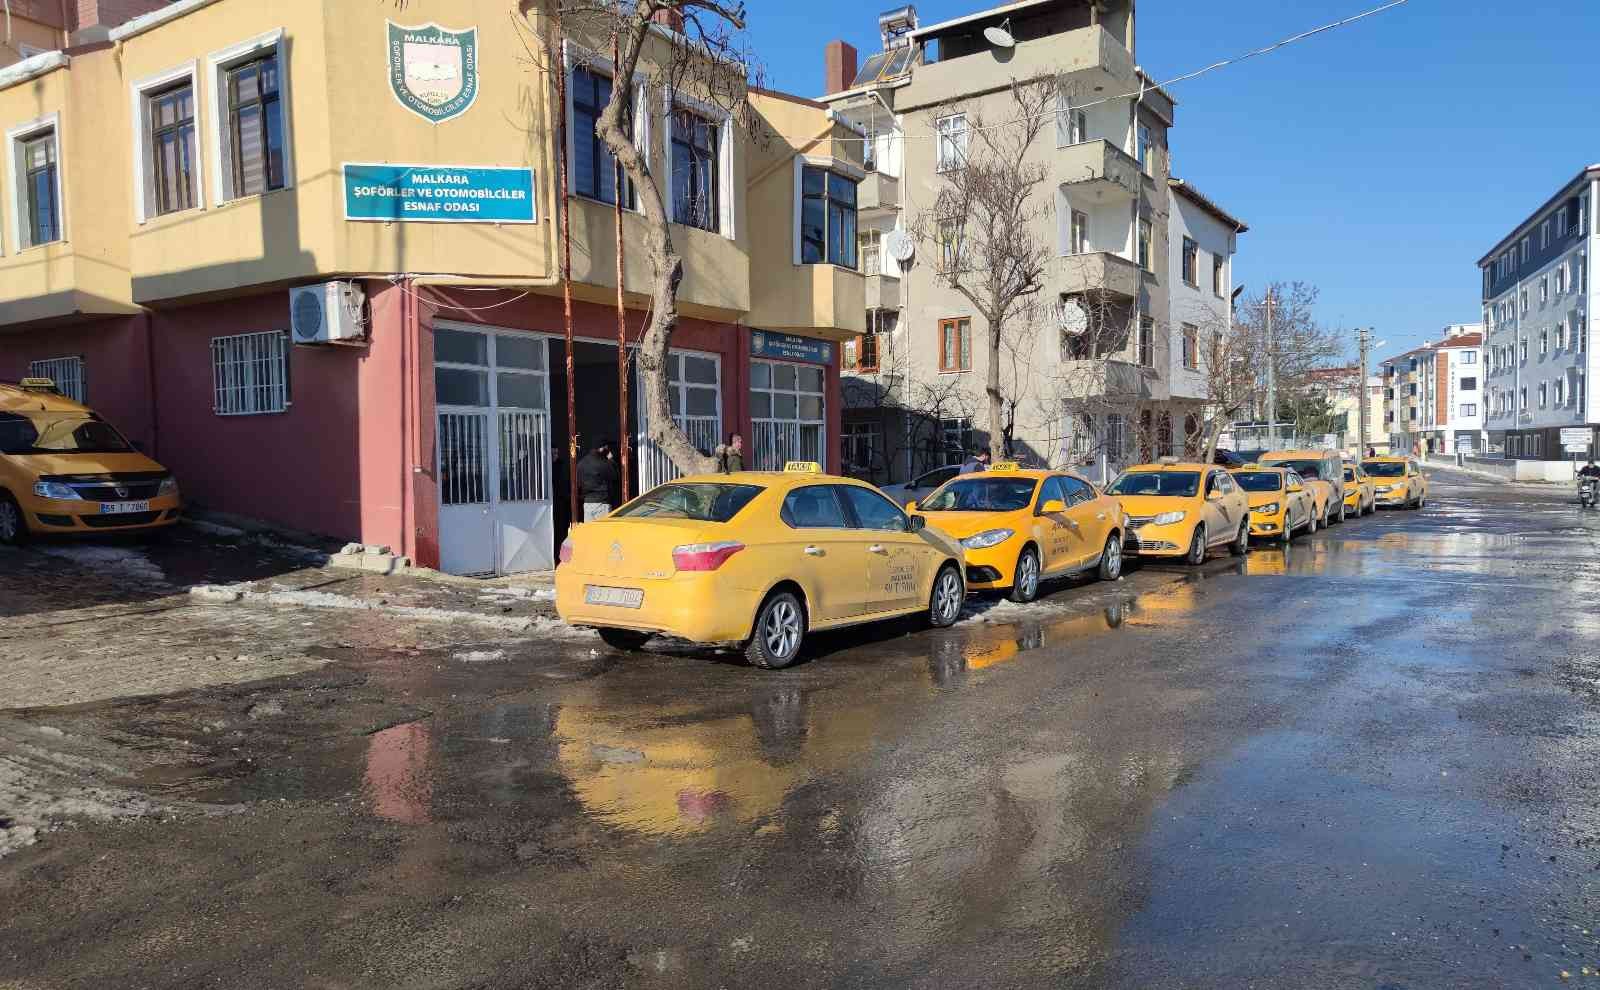 Tekirdağ’da taksimetrelere fiyat güncellemesi yapıldı #tekirdag